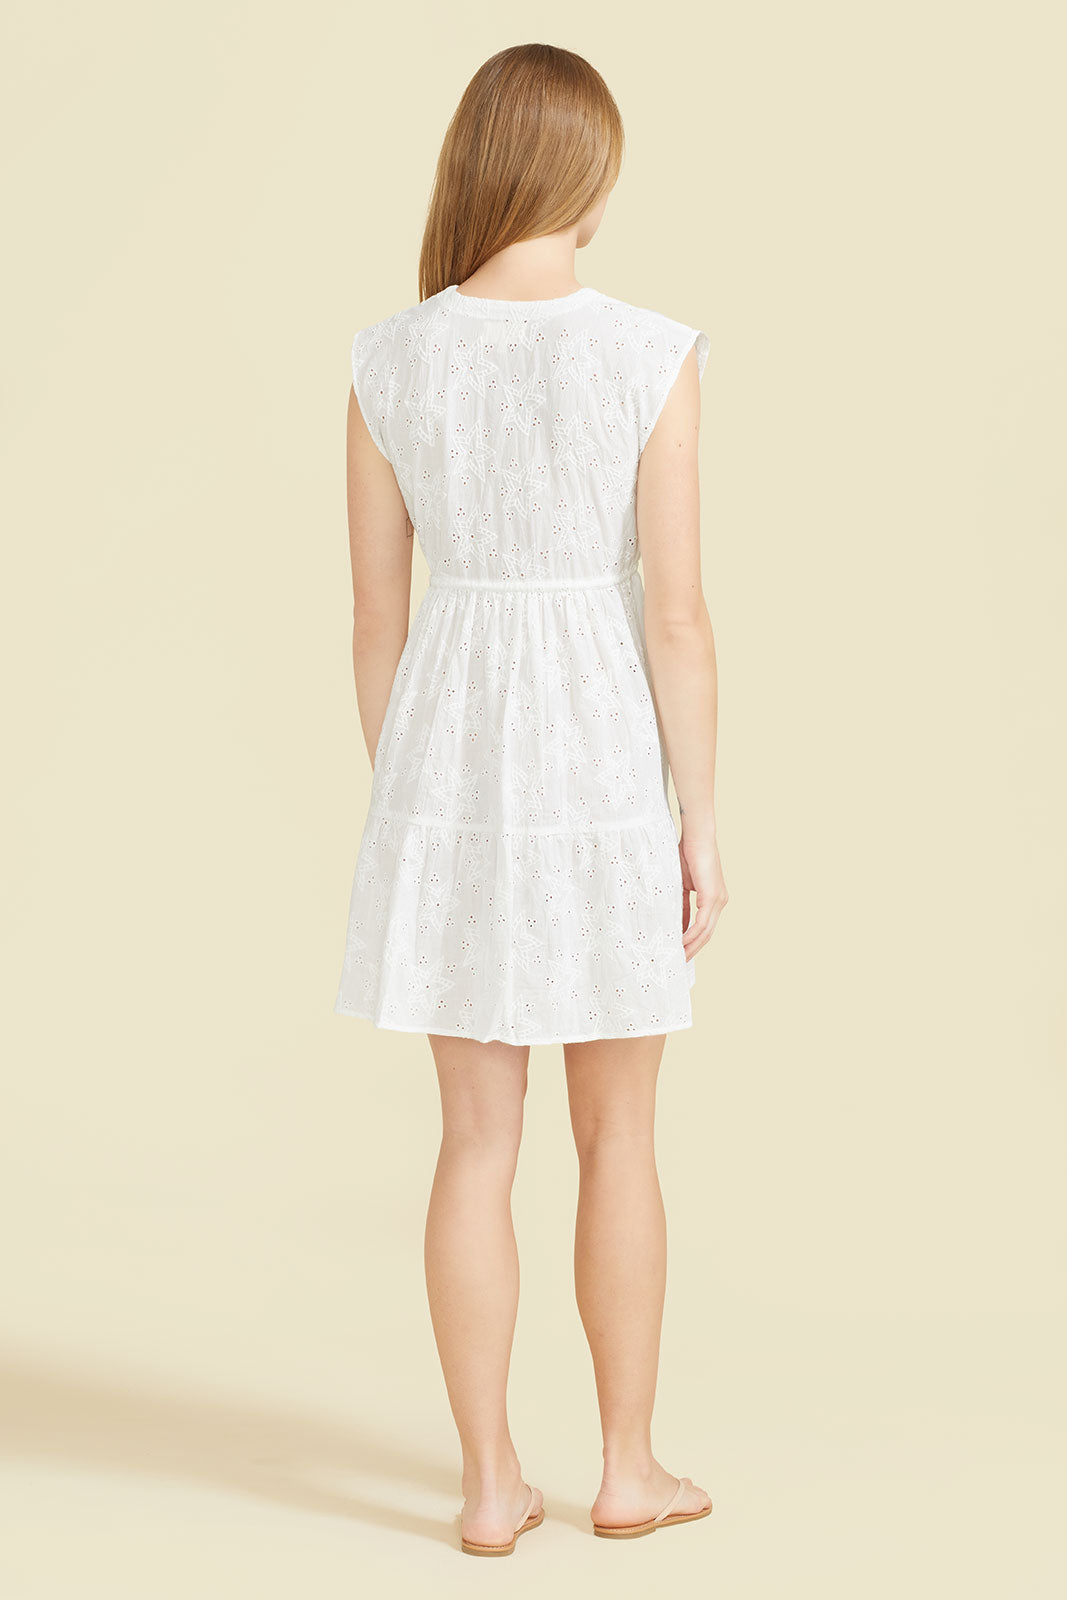 Ravello Dress - Starry White by Sitano